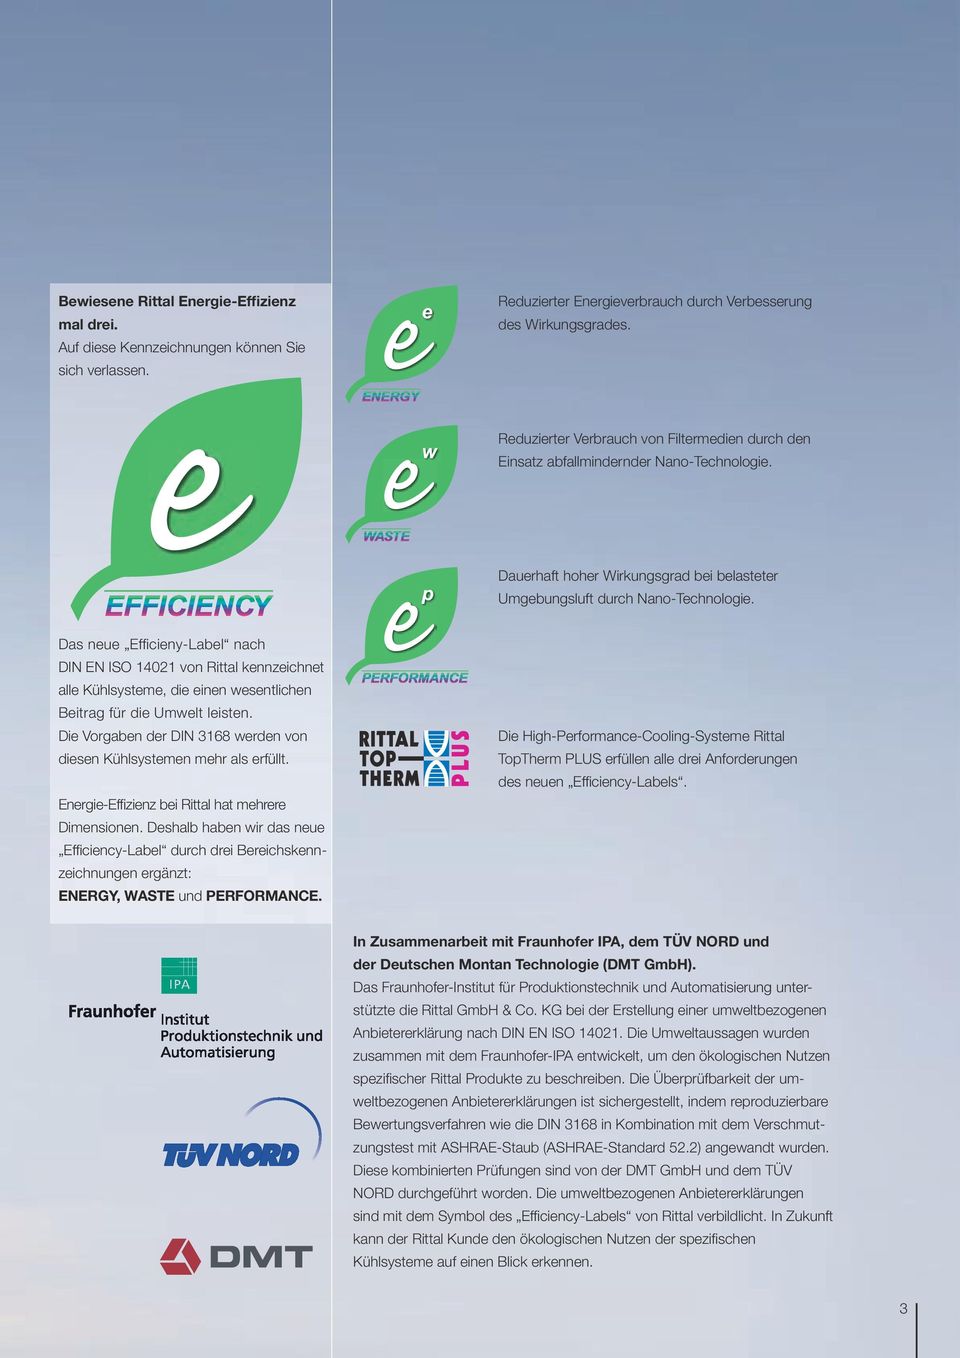 Das neue Effi cieny-label nach DIN EN ISO 14021 von Rittal kennzeichnet alle Kühlsysteme, die einen wesentlichen Beitrag für die Umwelt leisten.